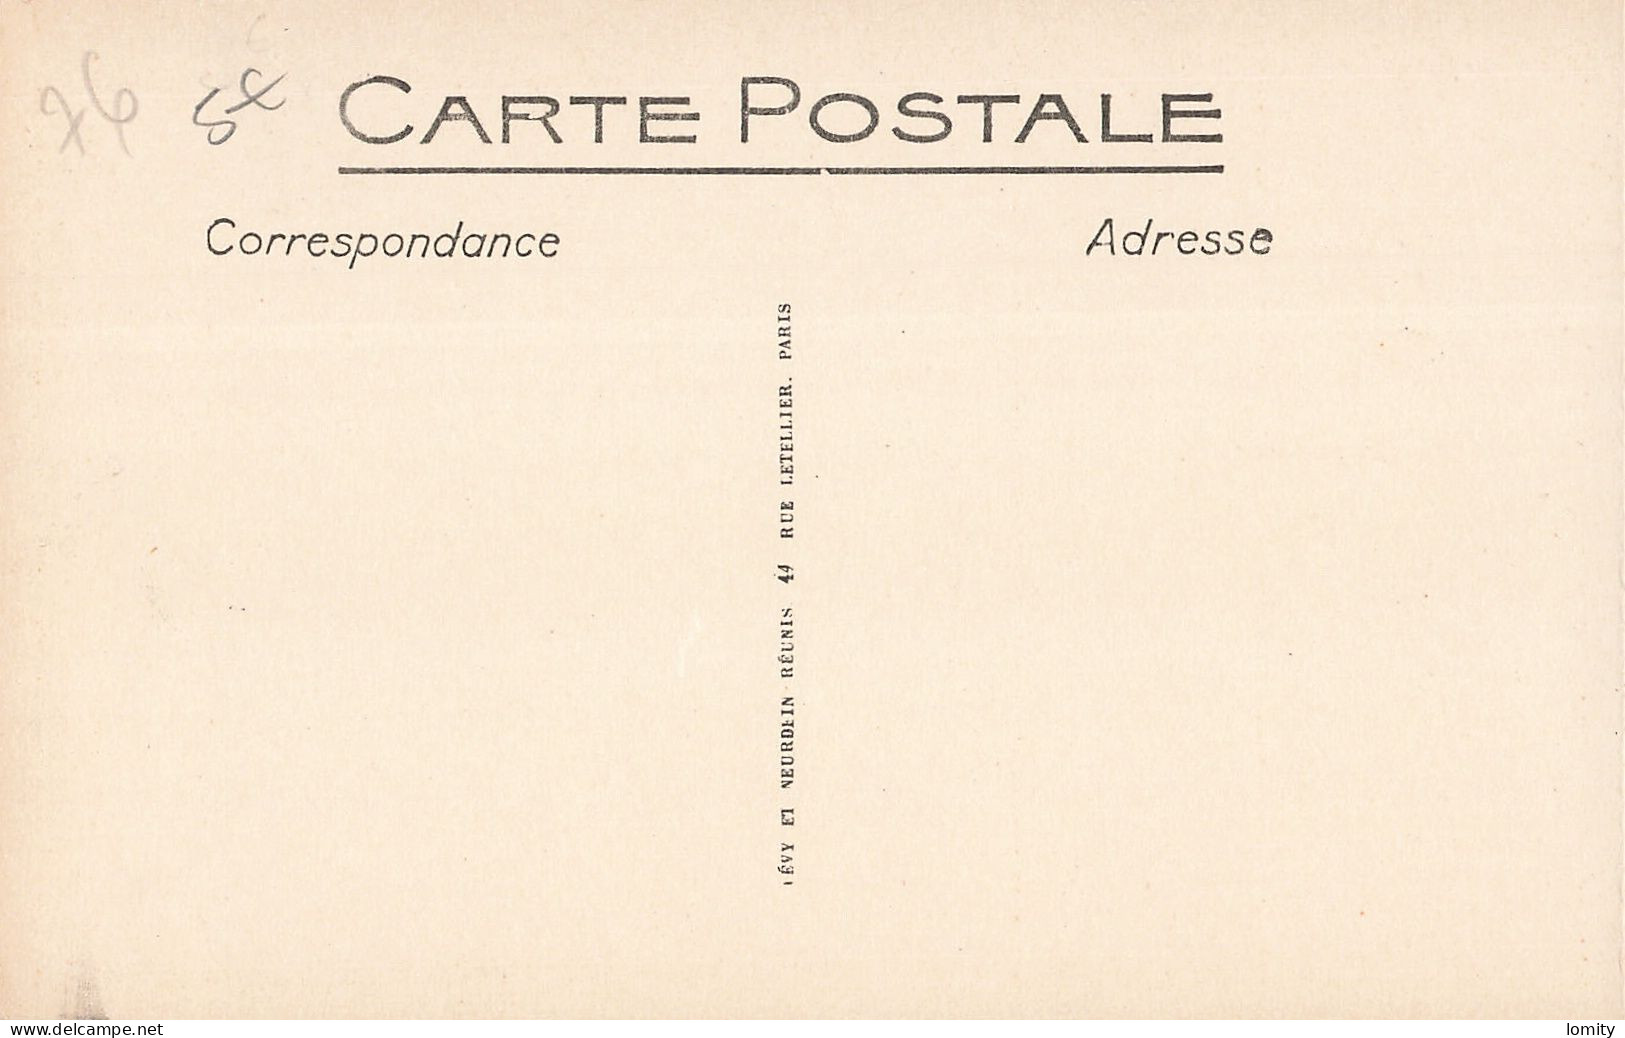 Destockage lot de 32 cartes postales CPA Seine Maritime Veules les Roses St Jouin Dieppe Rouen Le Havre Treport